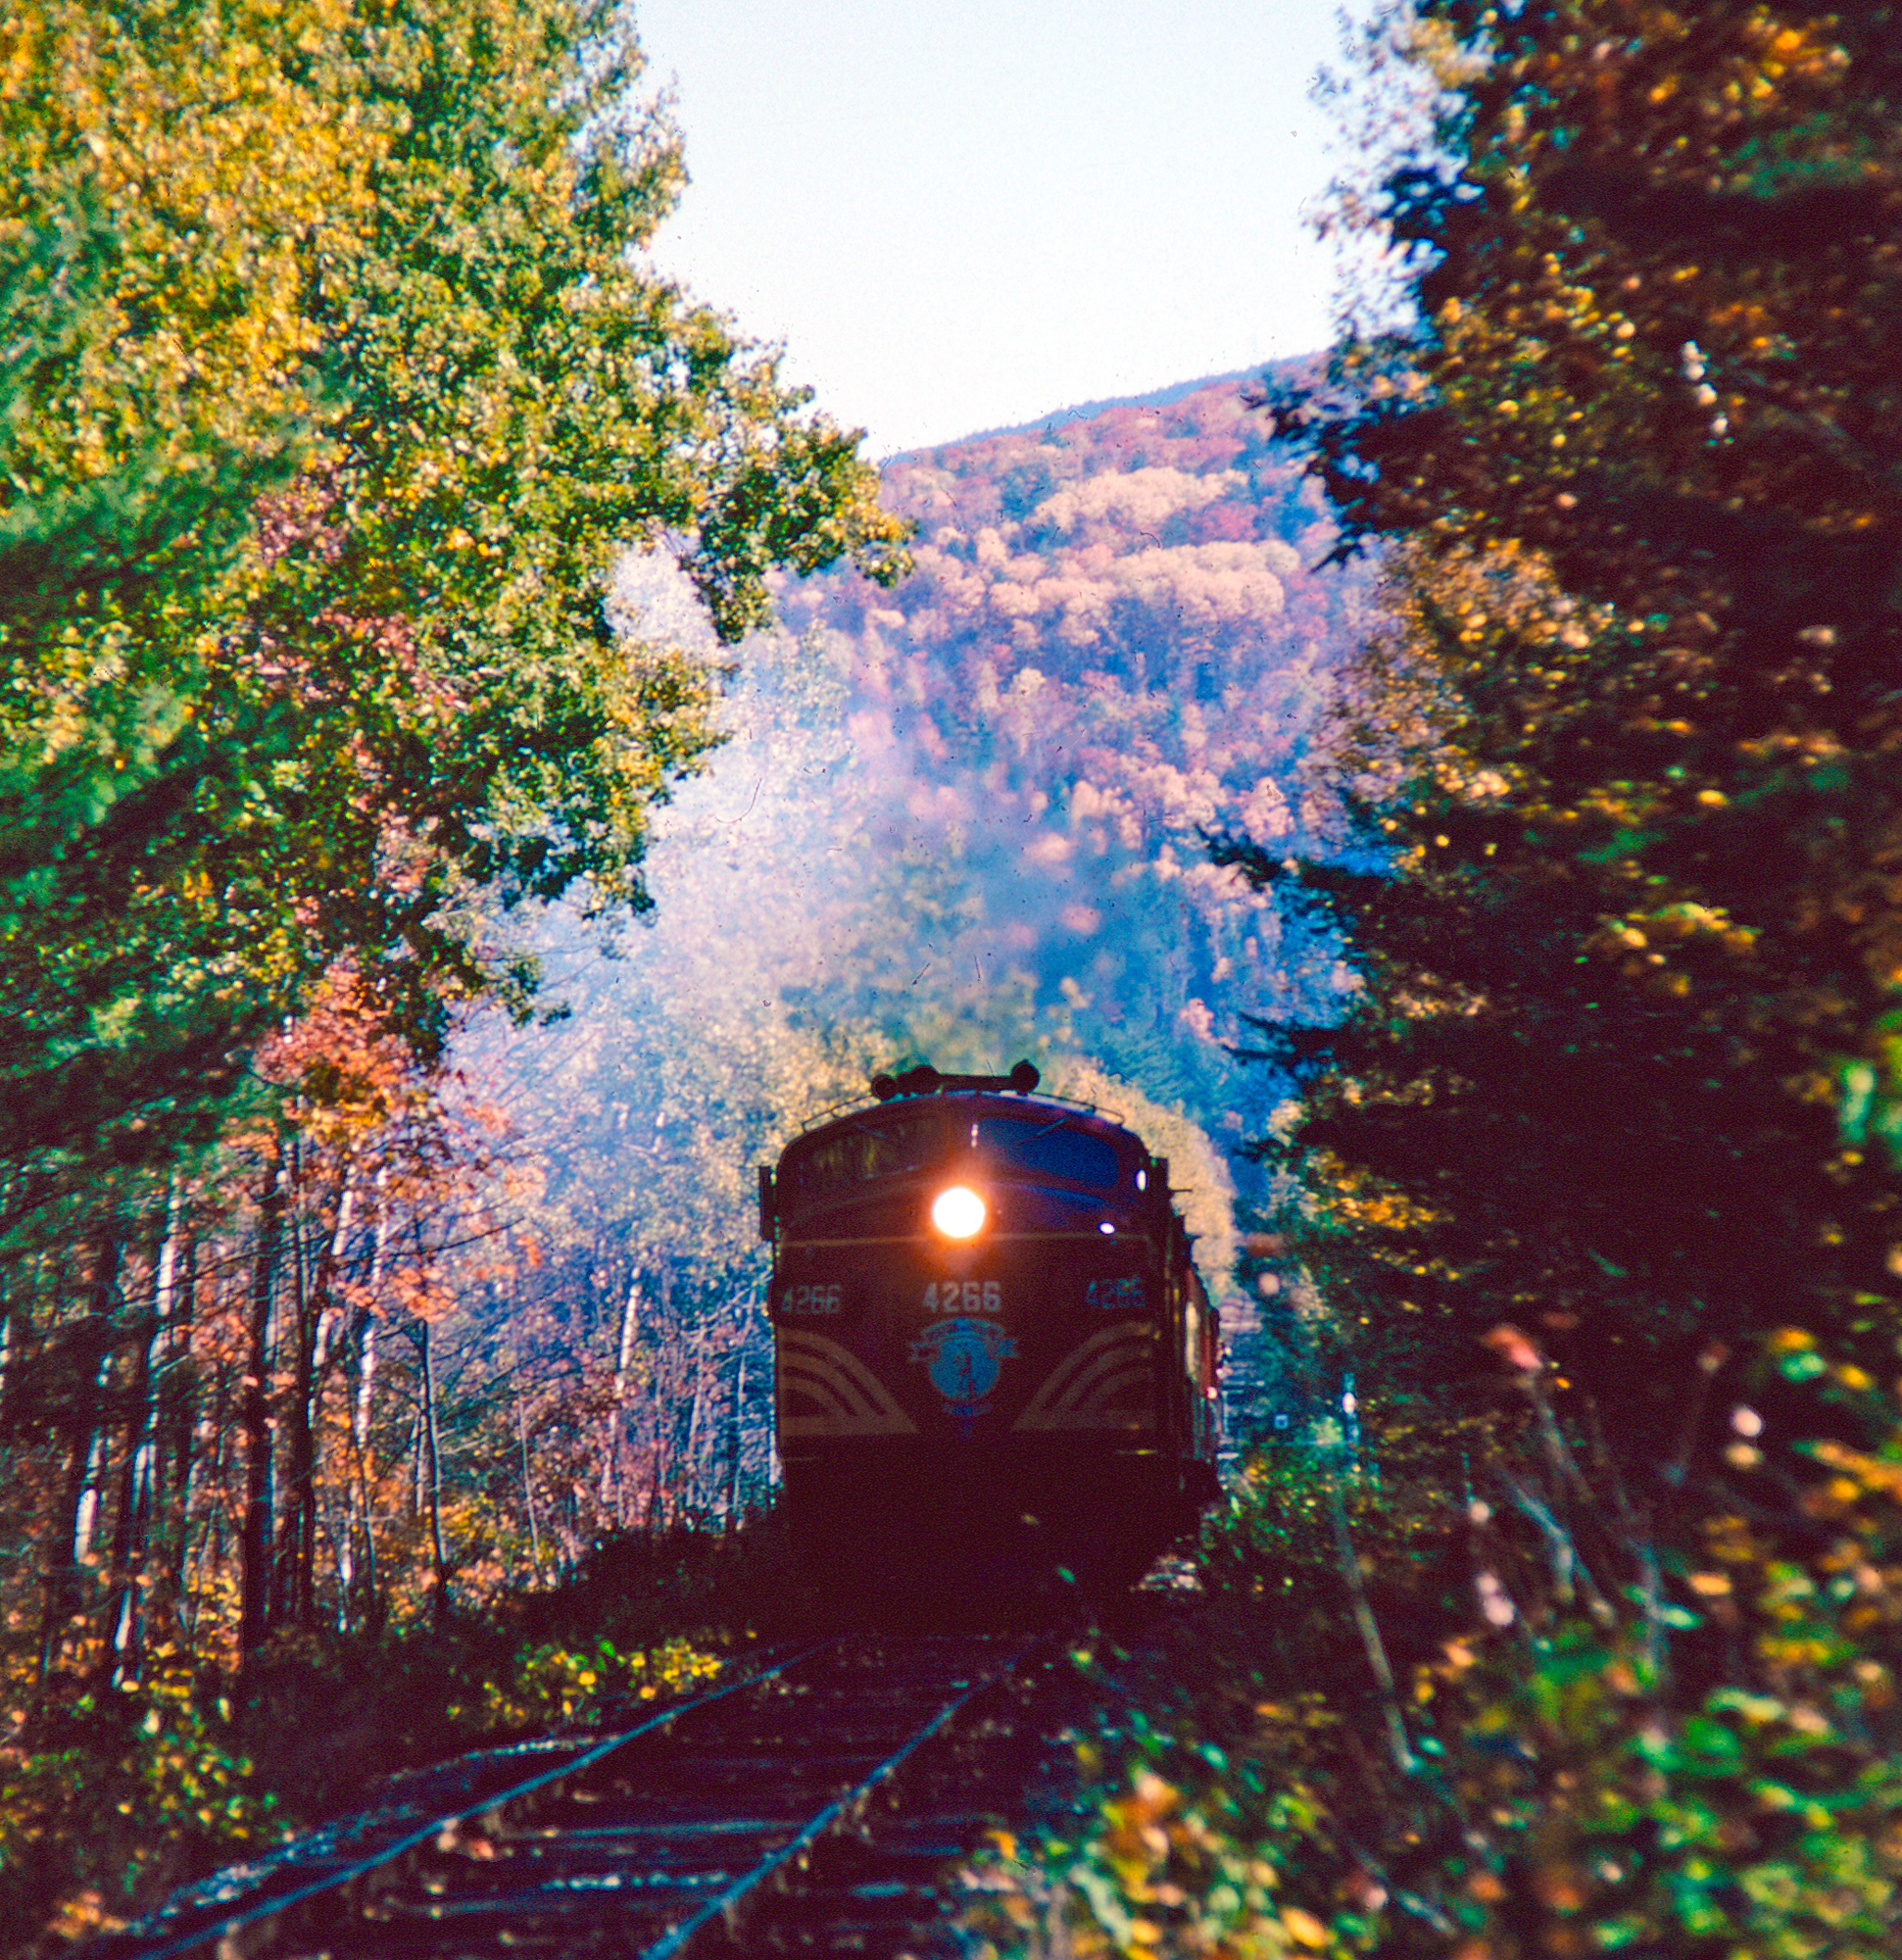 scenic railroad trips